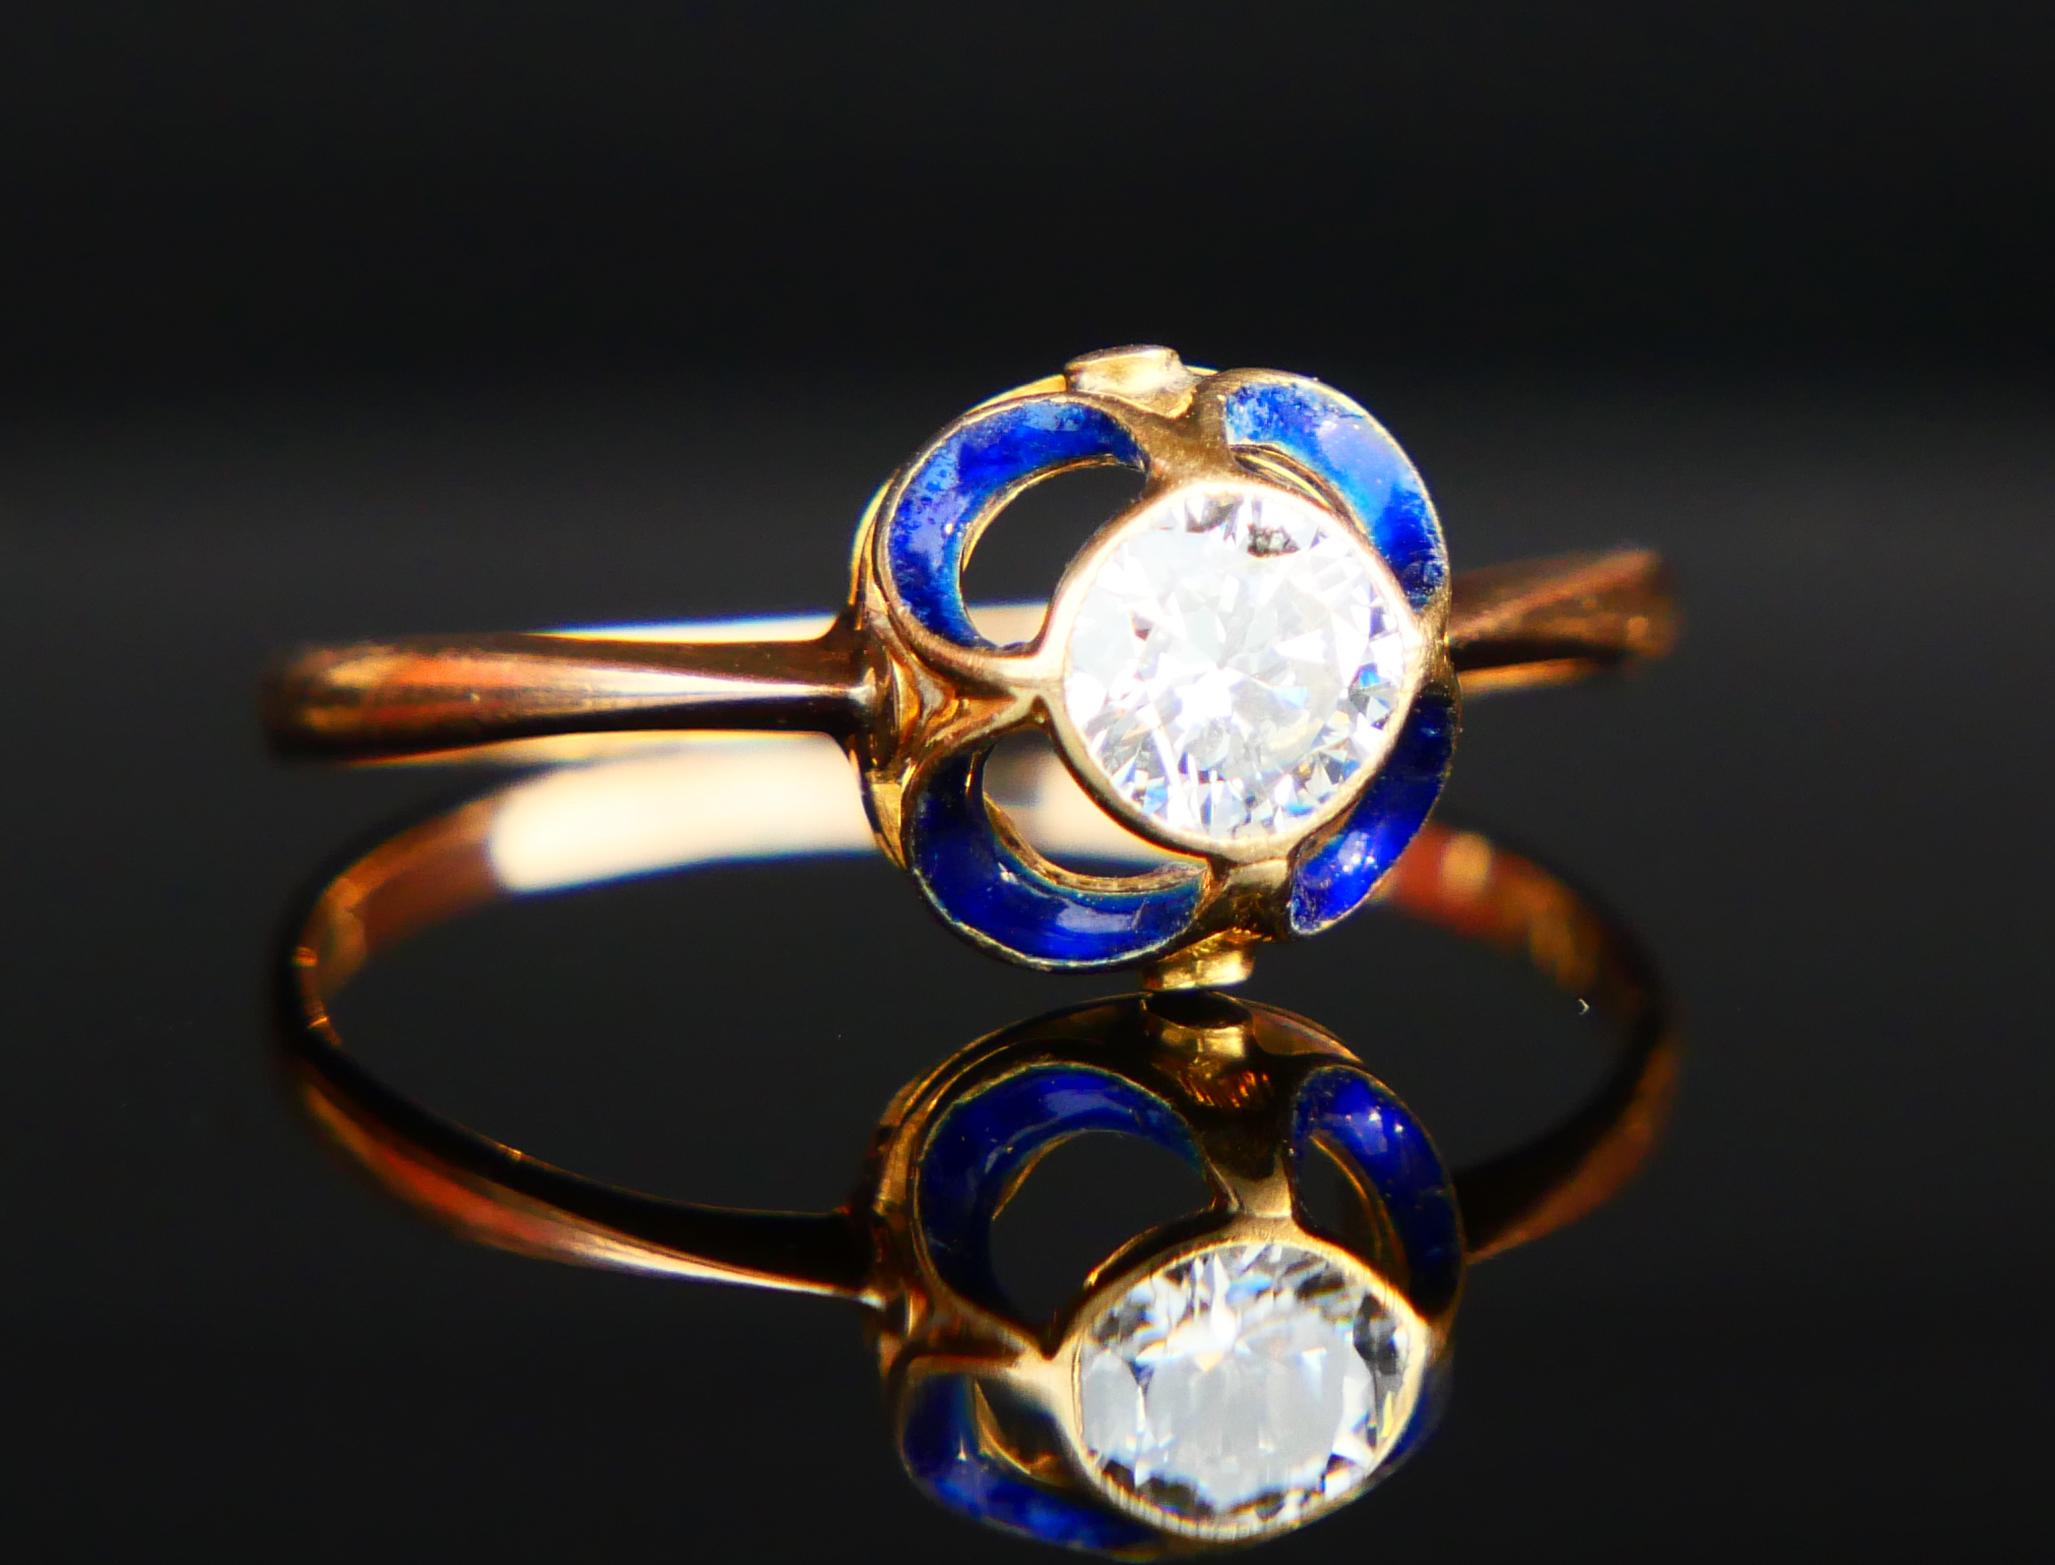 1904 Nordic Art Nouveau Ring 05ct. Diamond Blue Enamel 18K Gold ØUS9.5/2.5gr For Sale 6